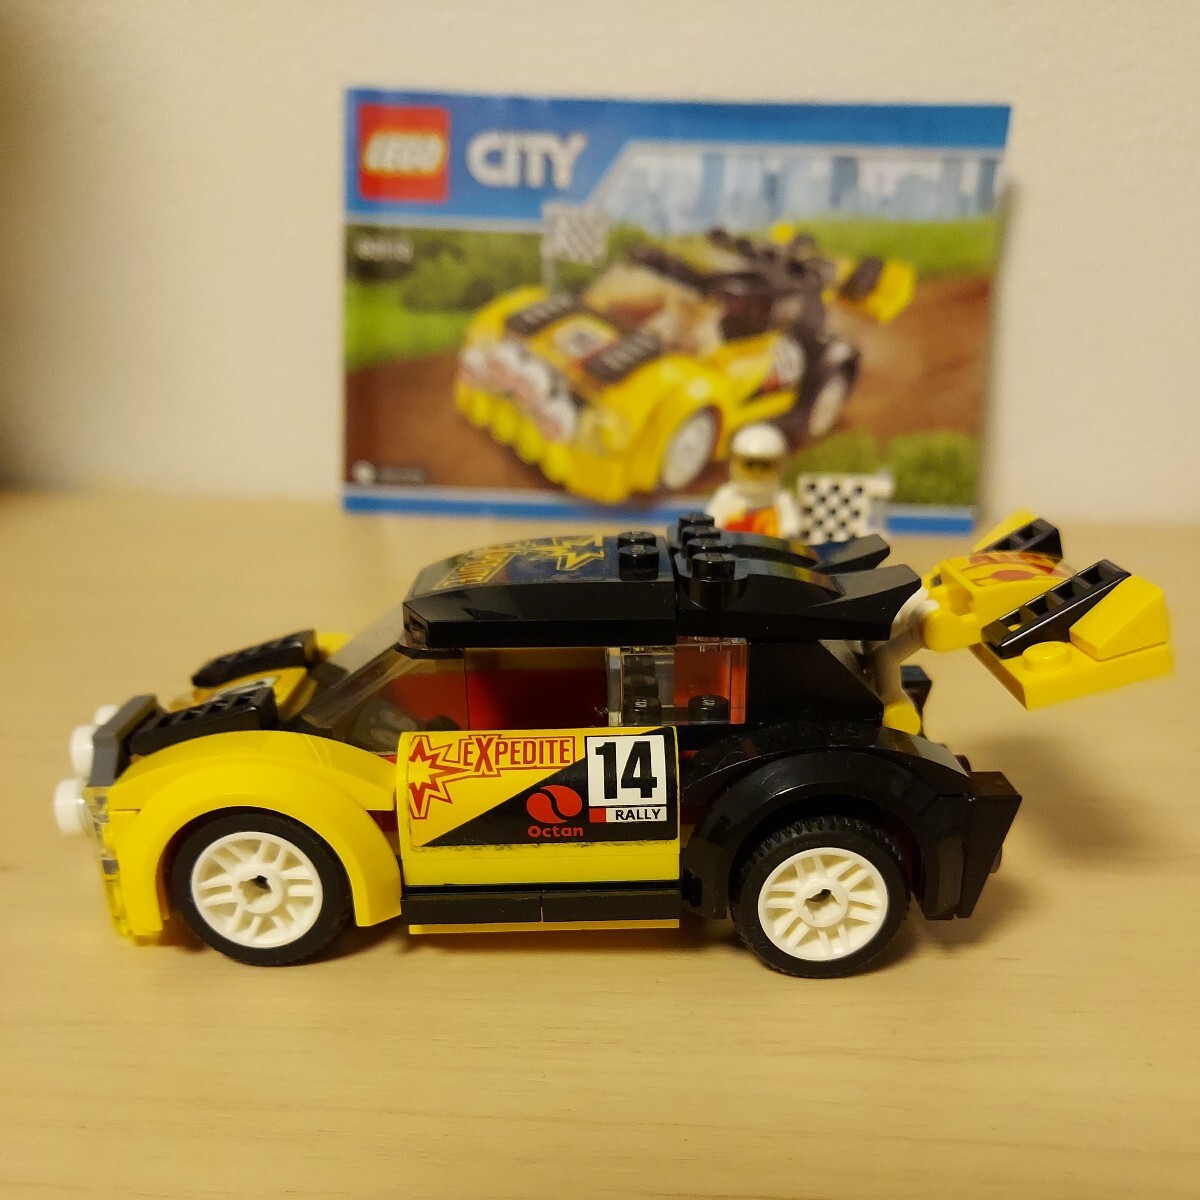 LEGO レゴ シティ CITY 絶版 60113 ラリーカー レーシングカー ラリー スポーツカー 廃盤 昔のレゴ 車_画像3